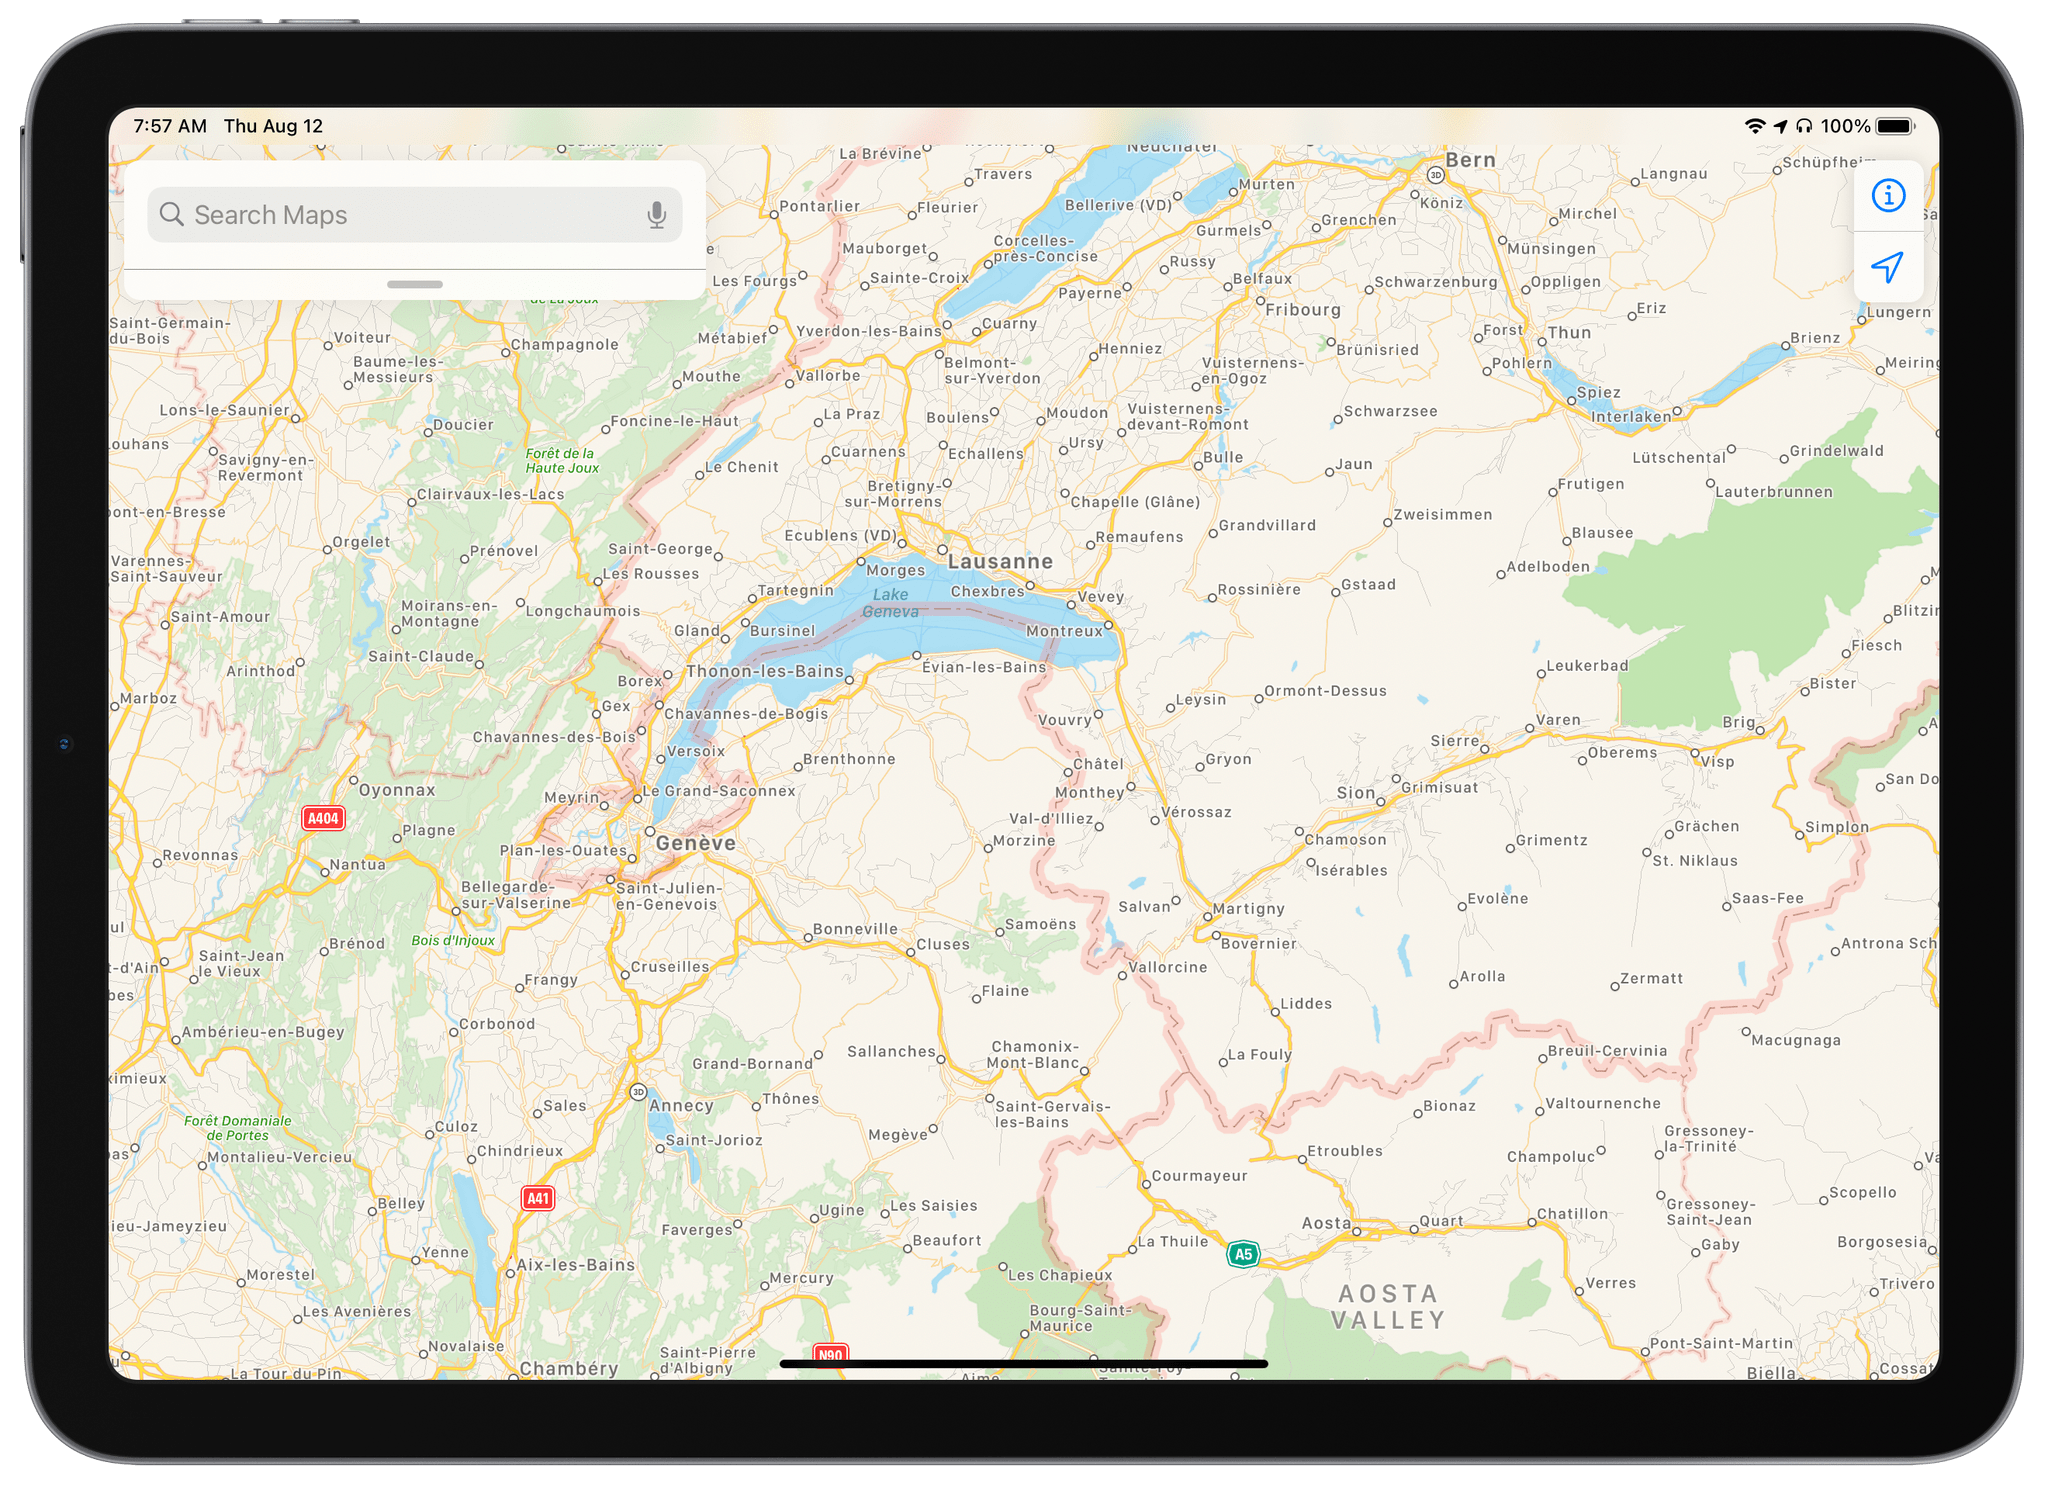 Good luck finding Mont Blanc using iPadOS 14.